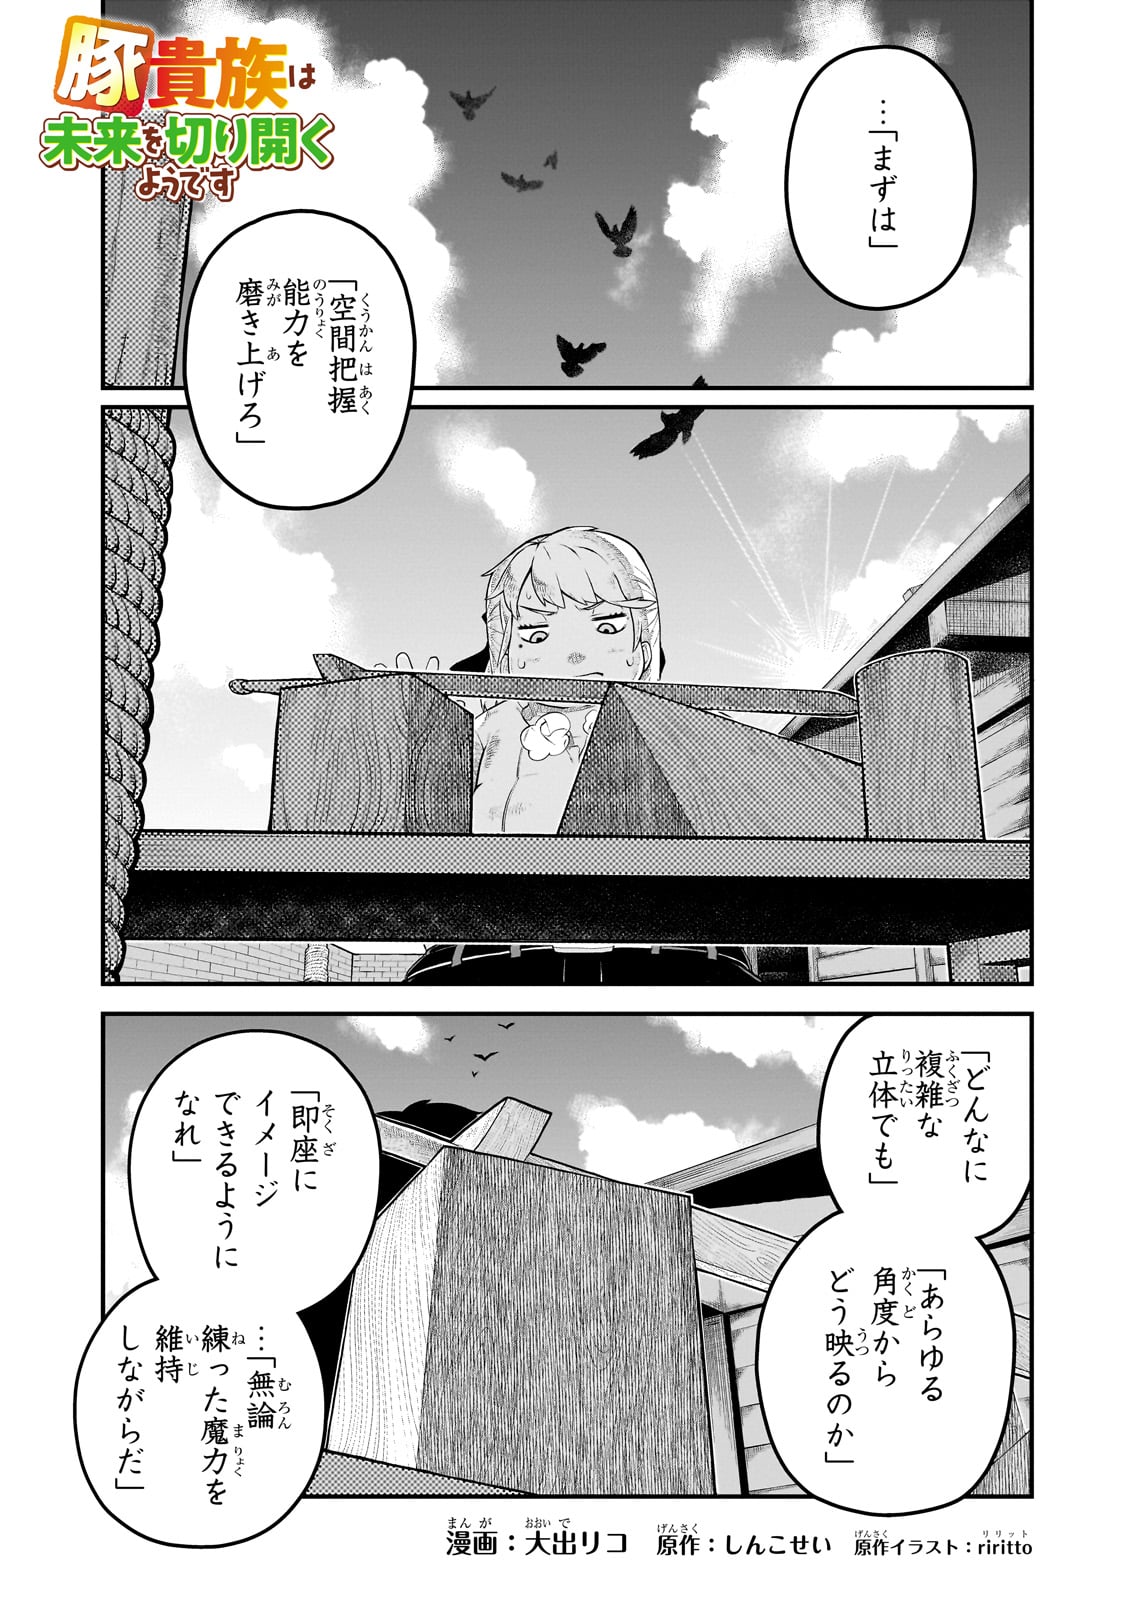 Buta Kizoku wa Mirai wo Kiri Hiraku you desu - Chapter 4 - Page 1